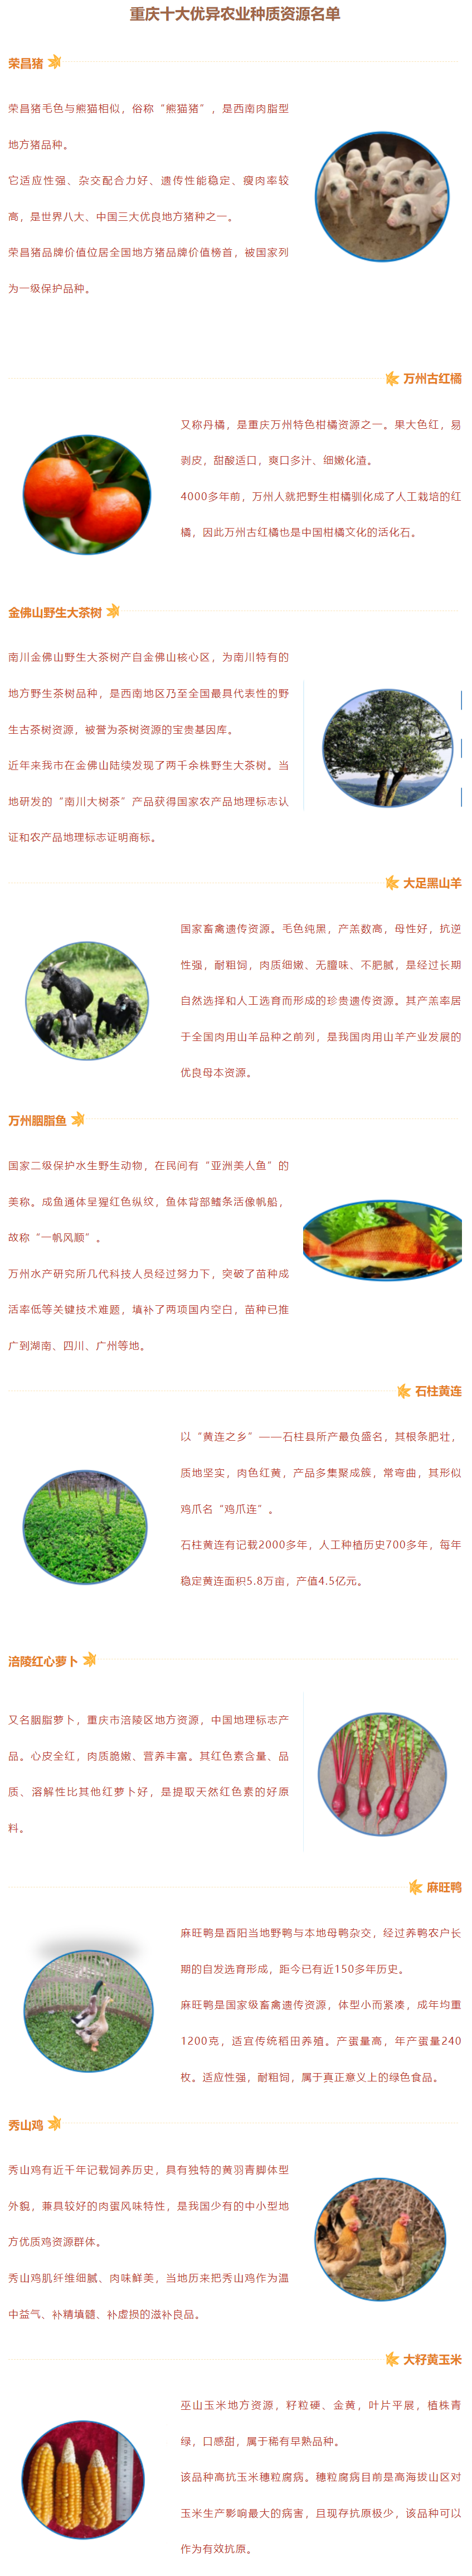 重庆发布十大优异农业种质资源名单